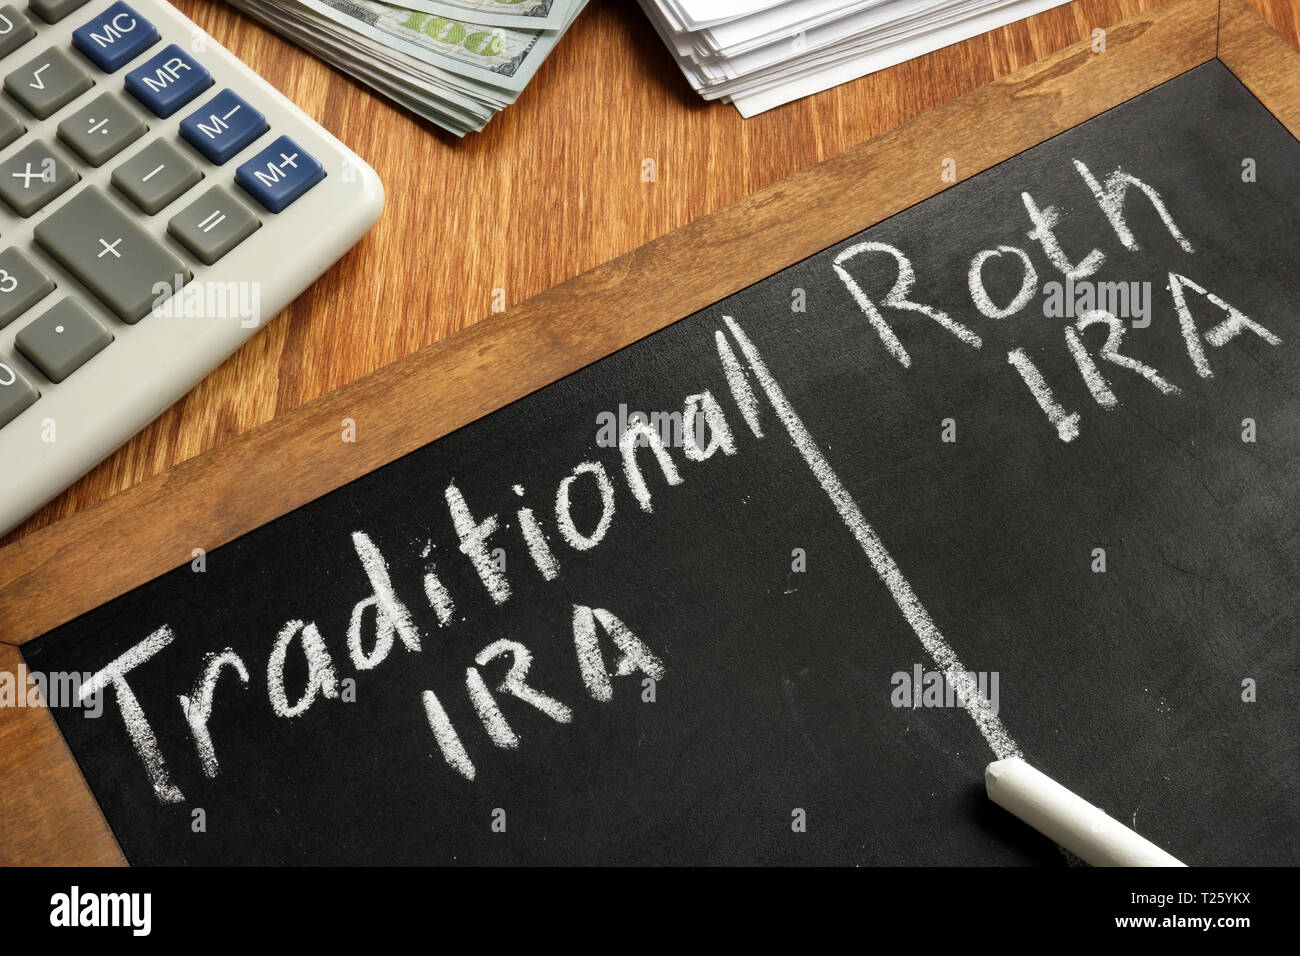 Traditionelle IRA vs Roth IRA auf die Tafel geschrieben. Stockfoto